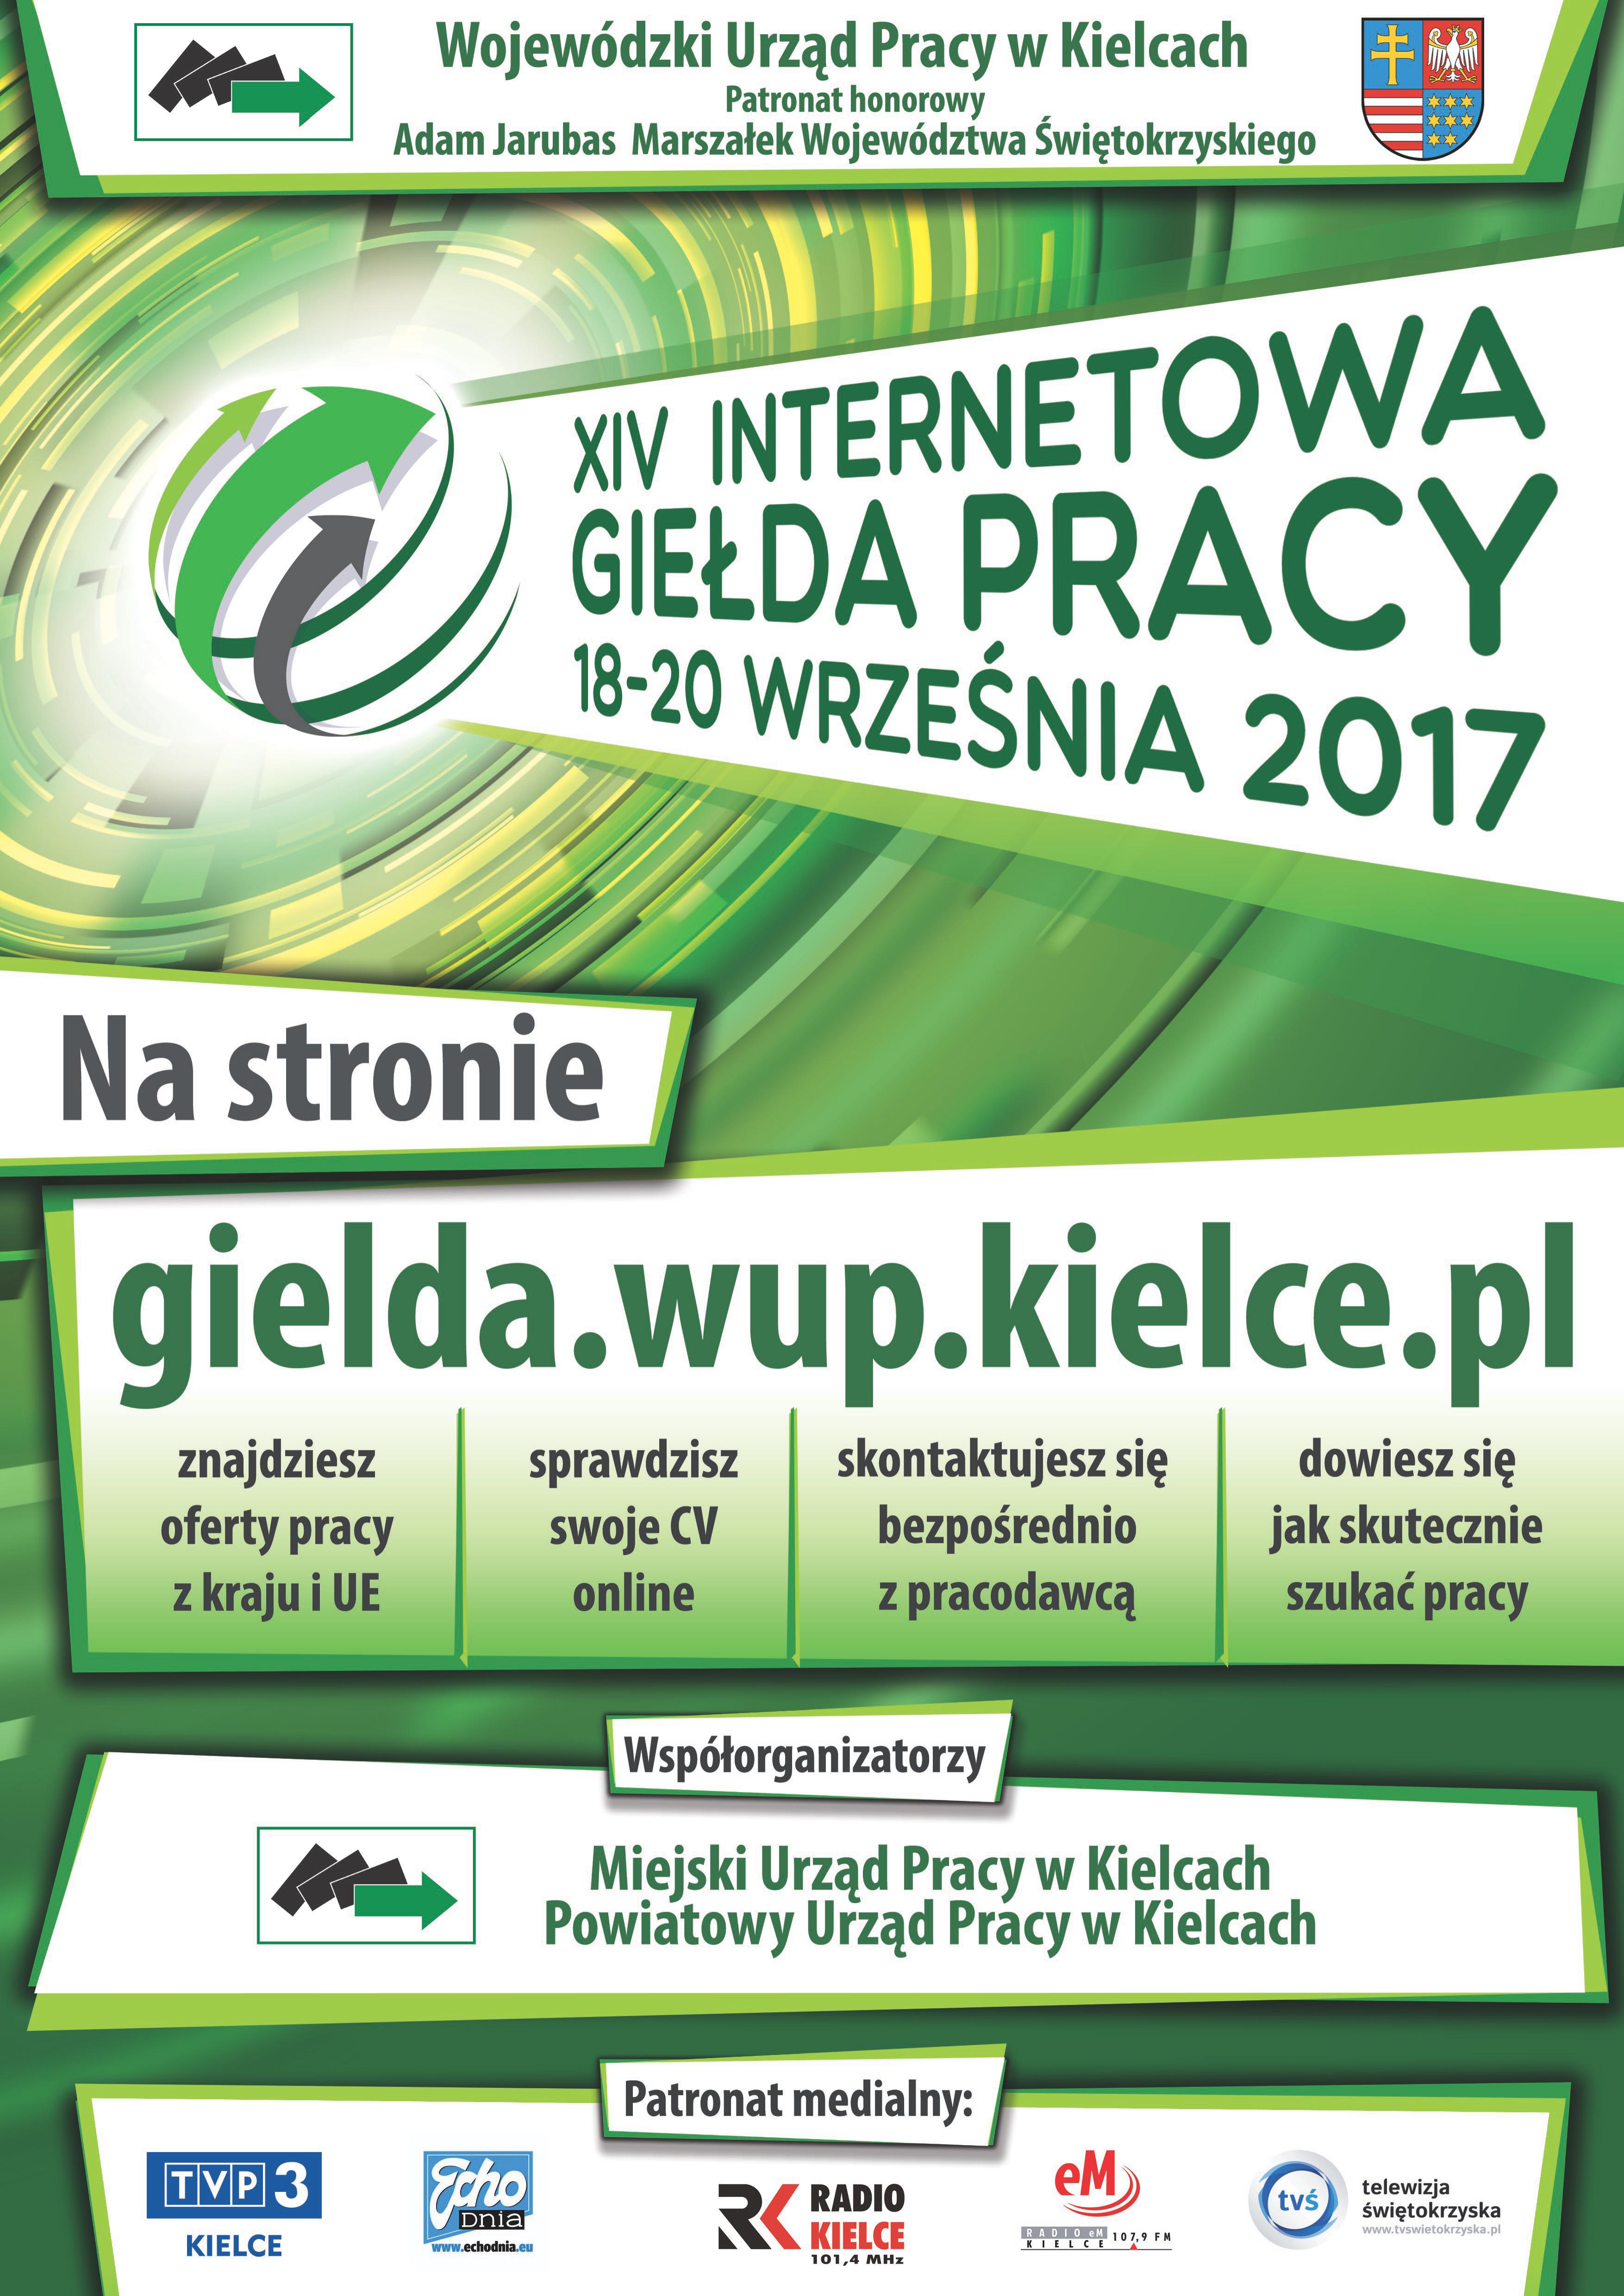 Plakat promujący XIV Internetową Giełdę Pracy - 18-20 września.2017